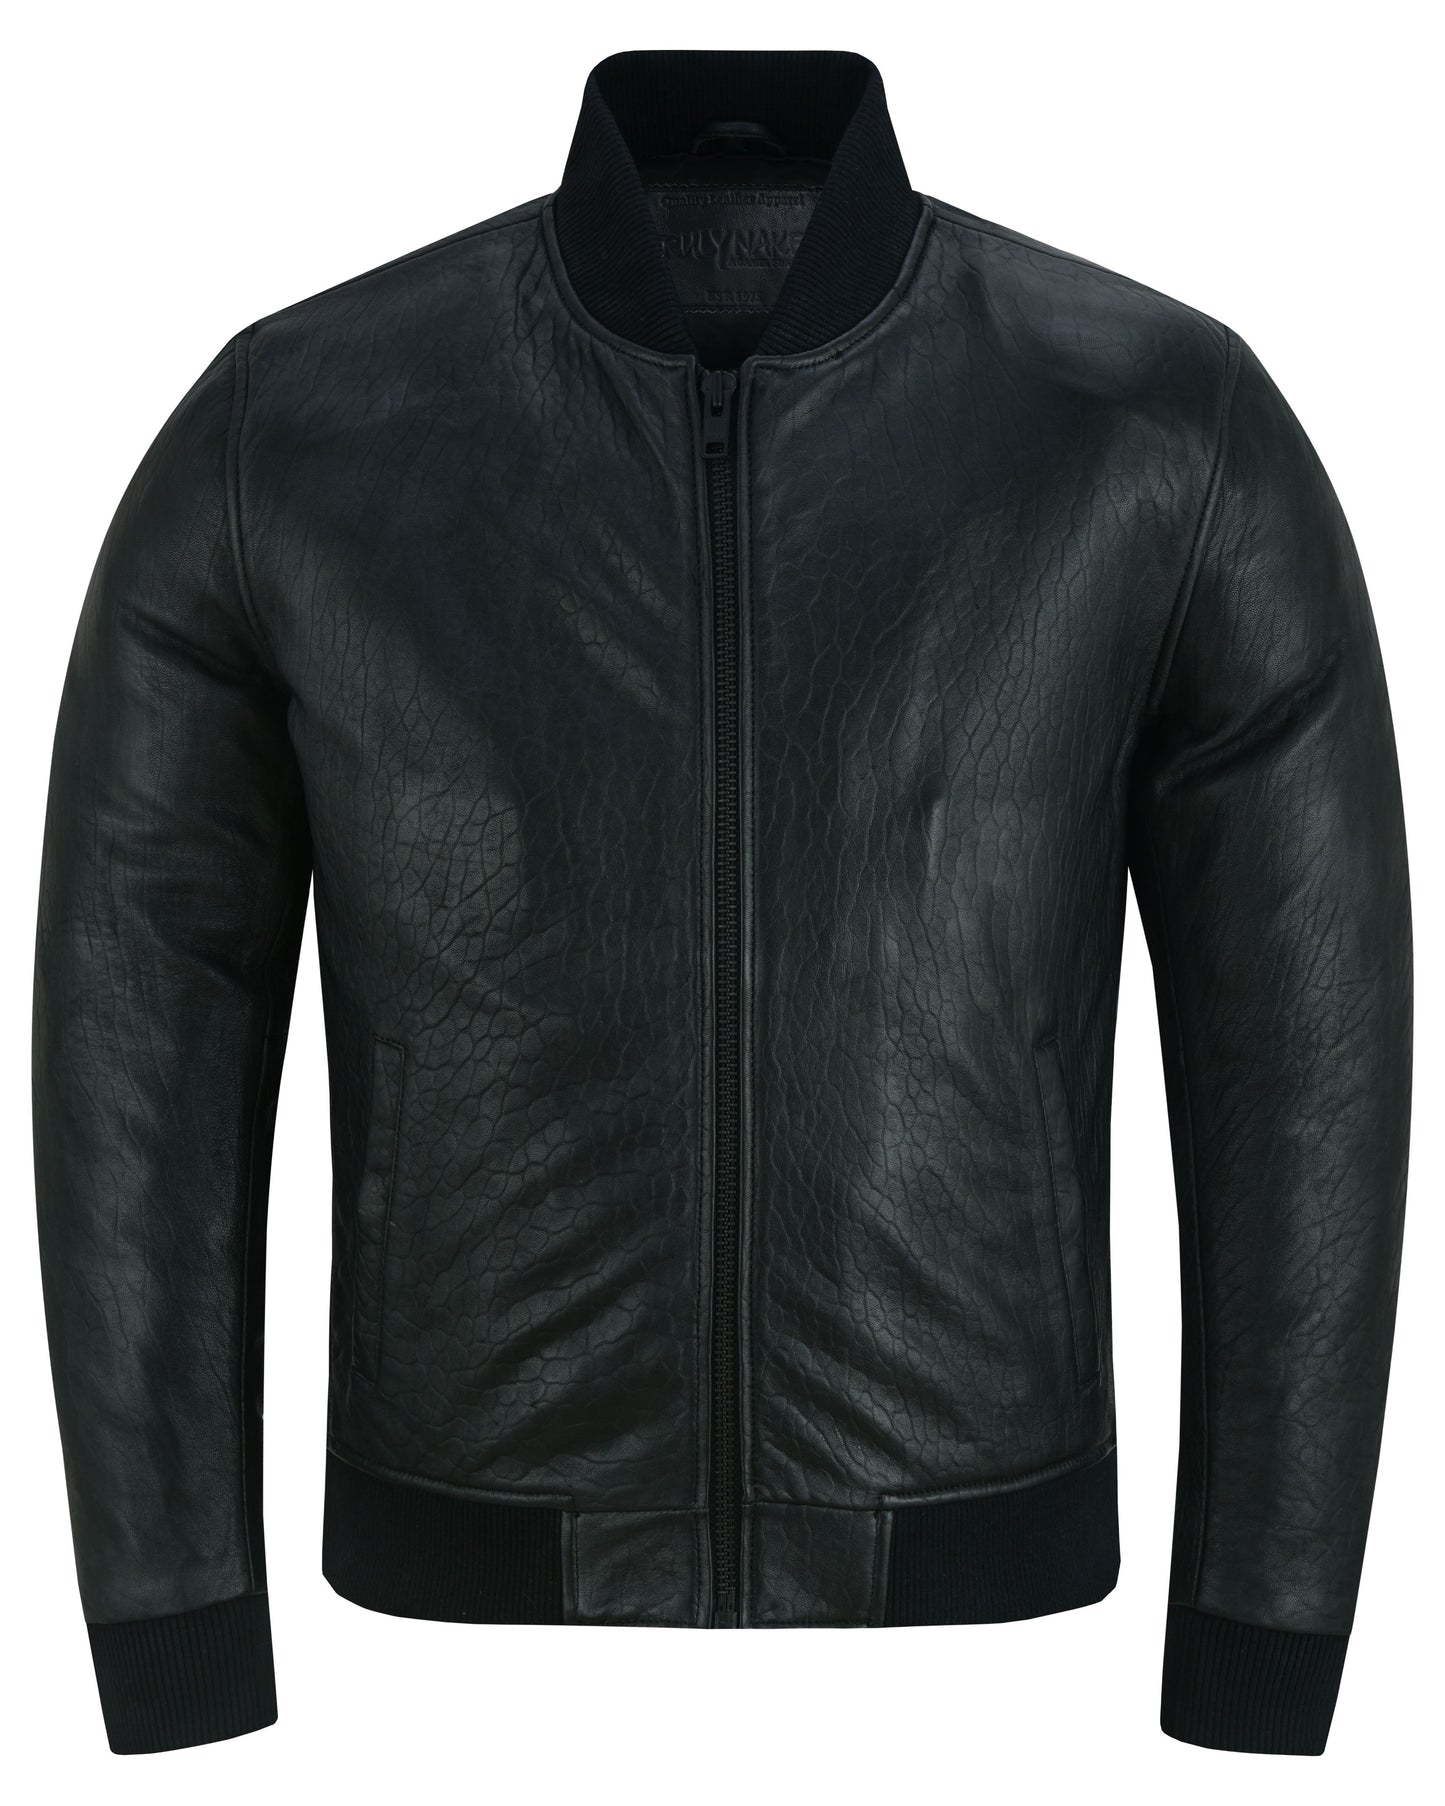 Stalwart Men’s Fashion Leather Bomber Jacket